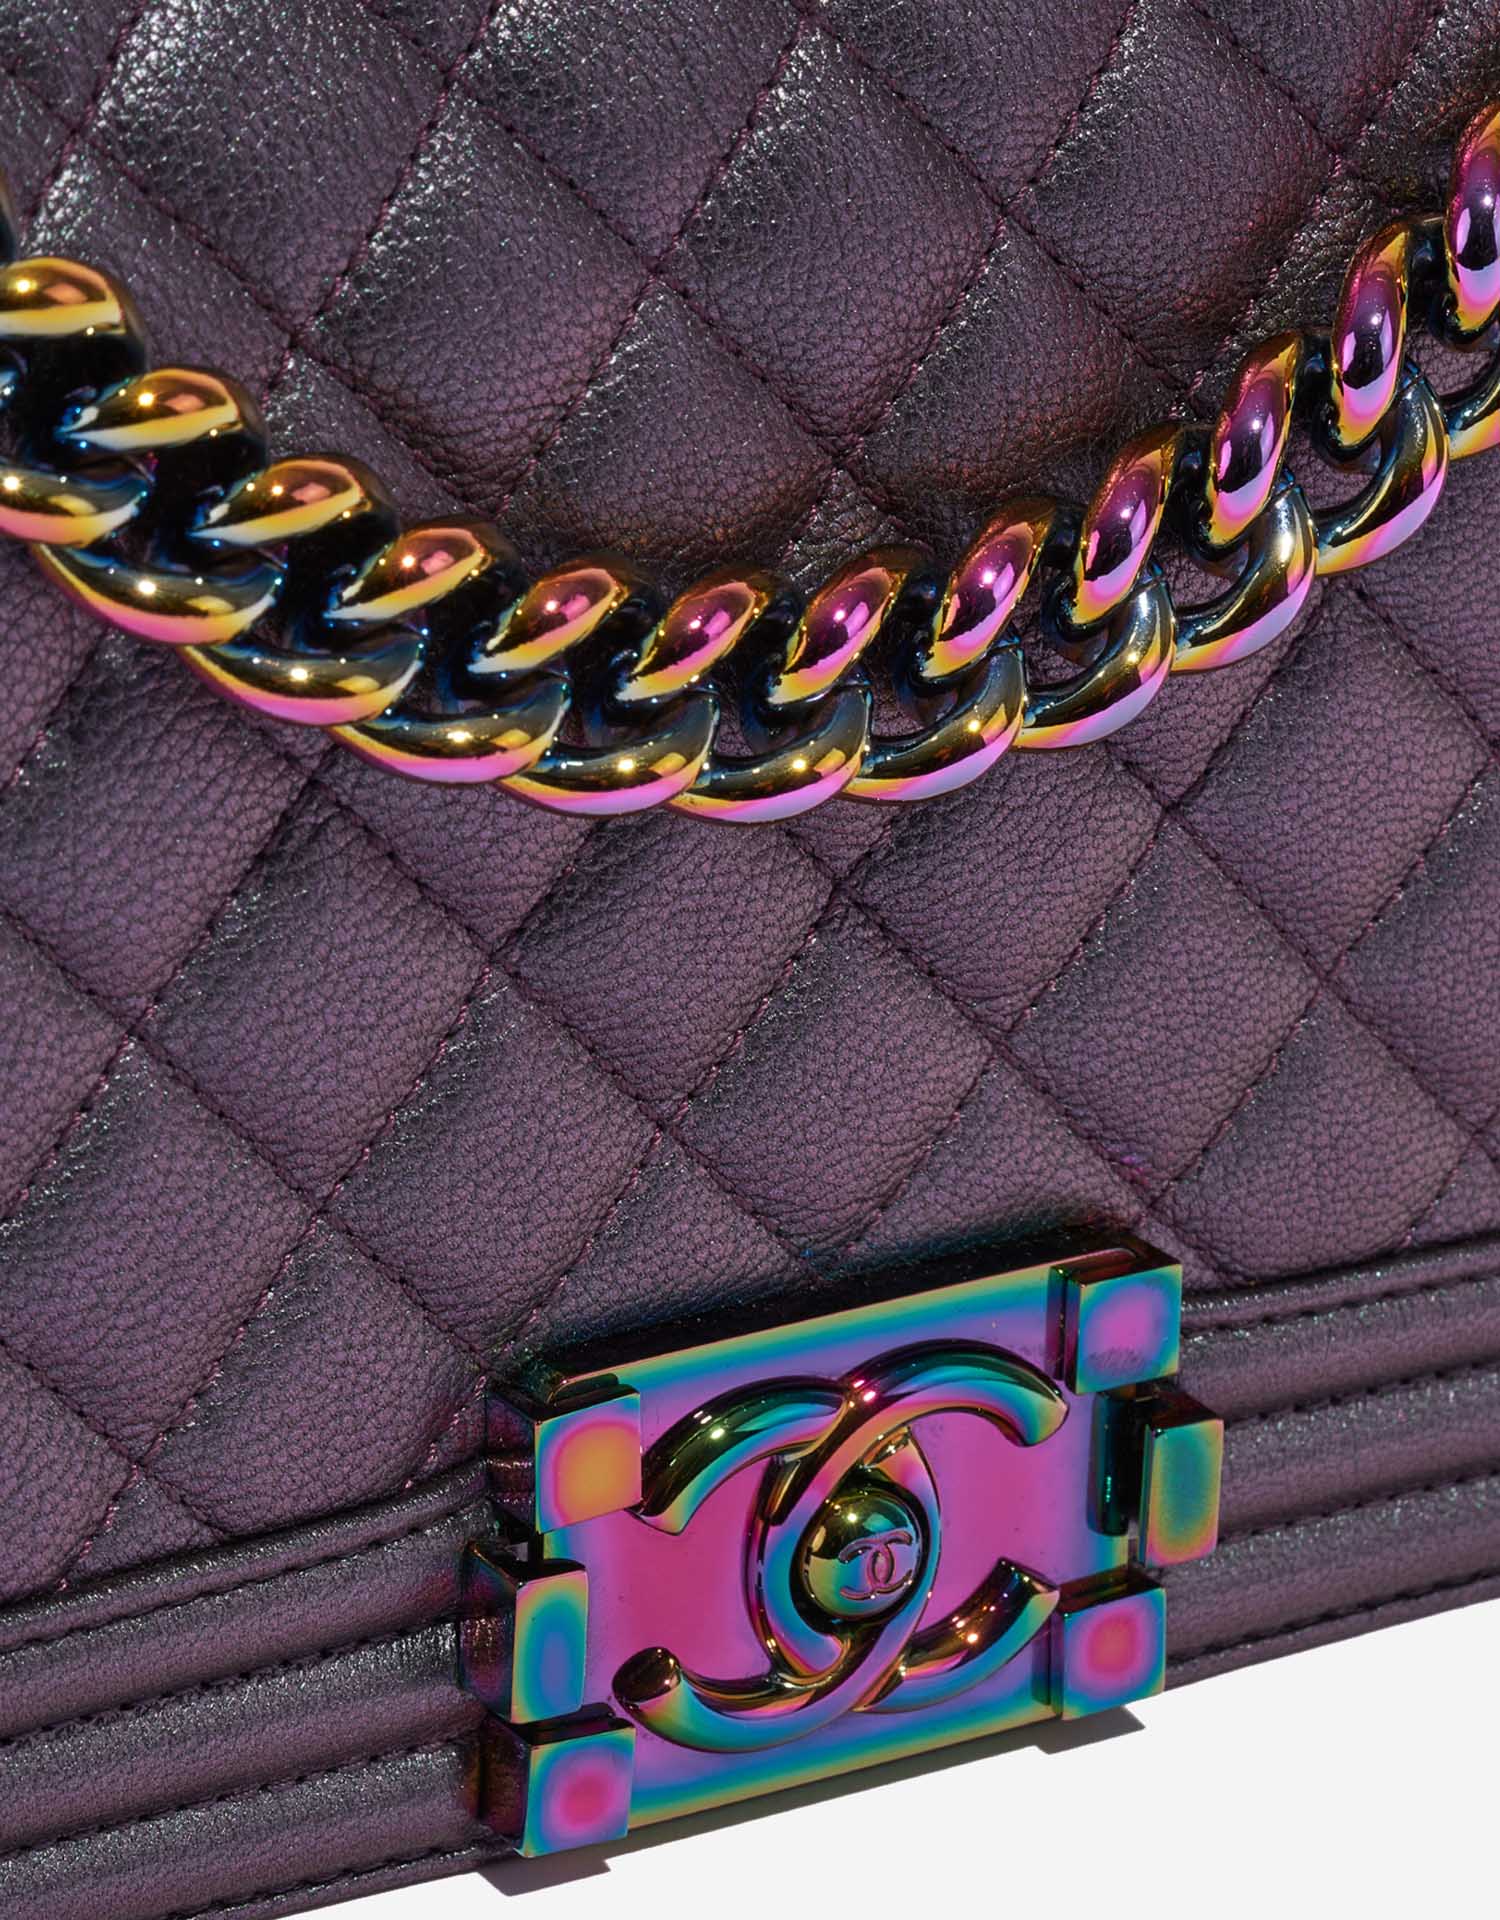 Chanel Boy OldMedium Purple-Greyish Closing System  | Sell your designer bag on Saclab.com